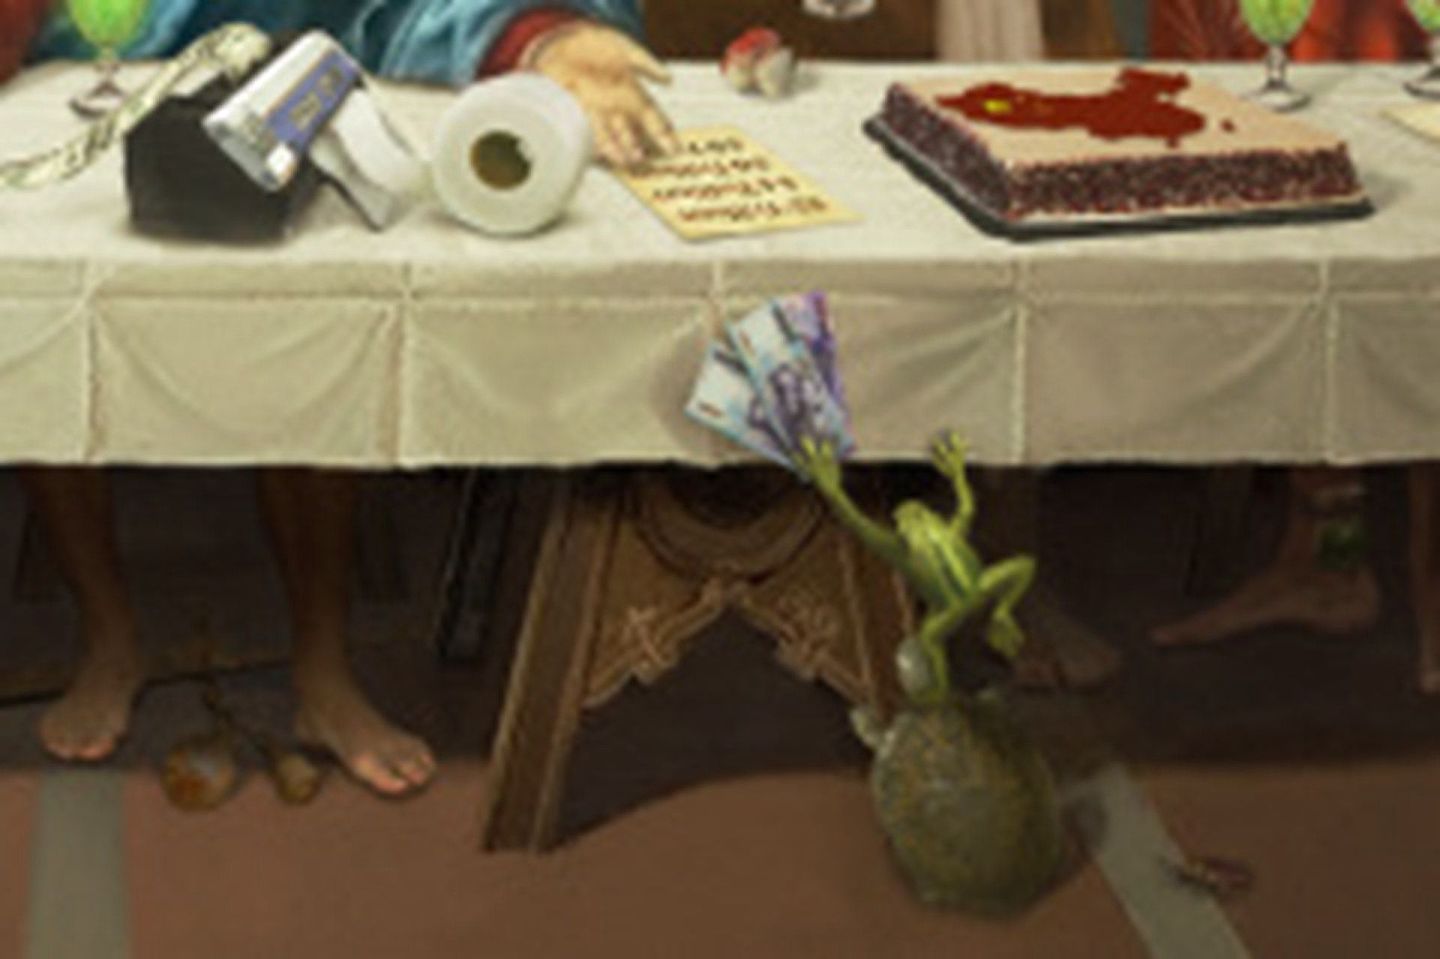 中国大陆画师“半捅老阿汤”的作品“最后的G7”中，其中一部份画面出现一只试图跳到桌上塞新台币给美国的青蛙，维妙维肖的比喻了当前台湾的处境。（微博@半捅老阿汤）